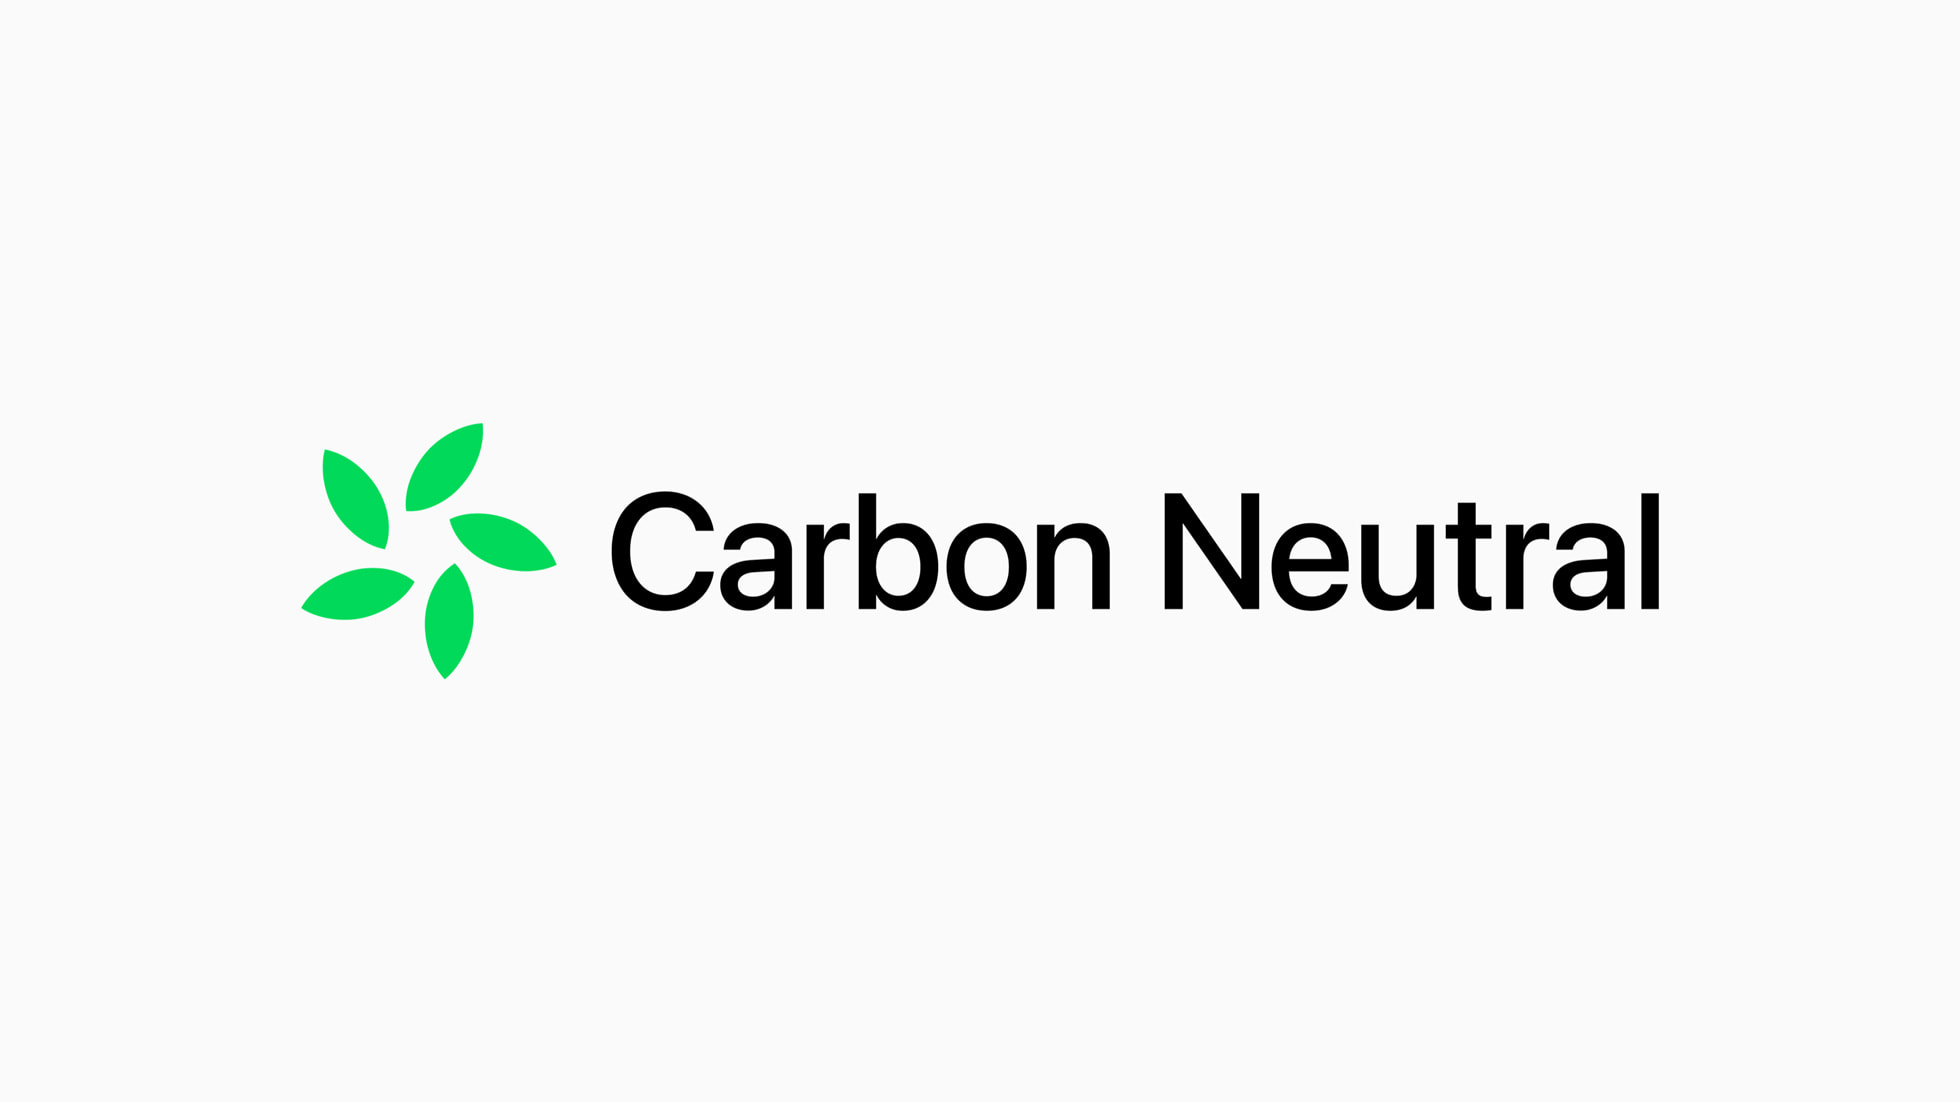 Apple 碳中和計畫的全新商標。